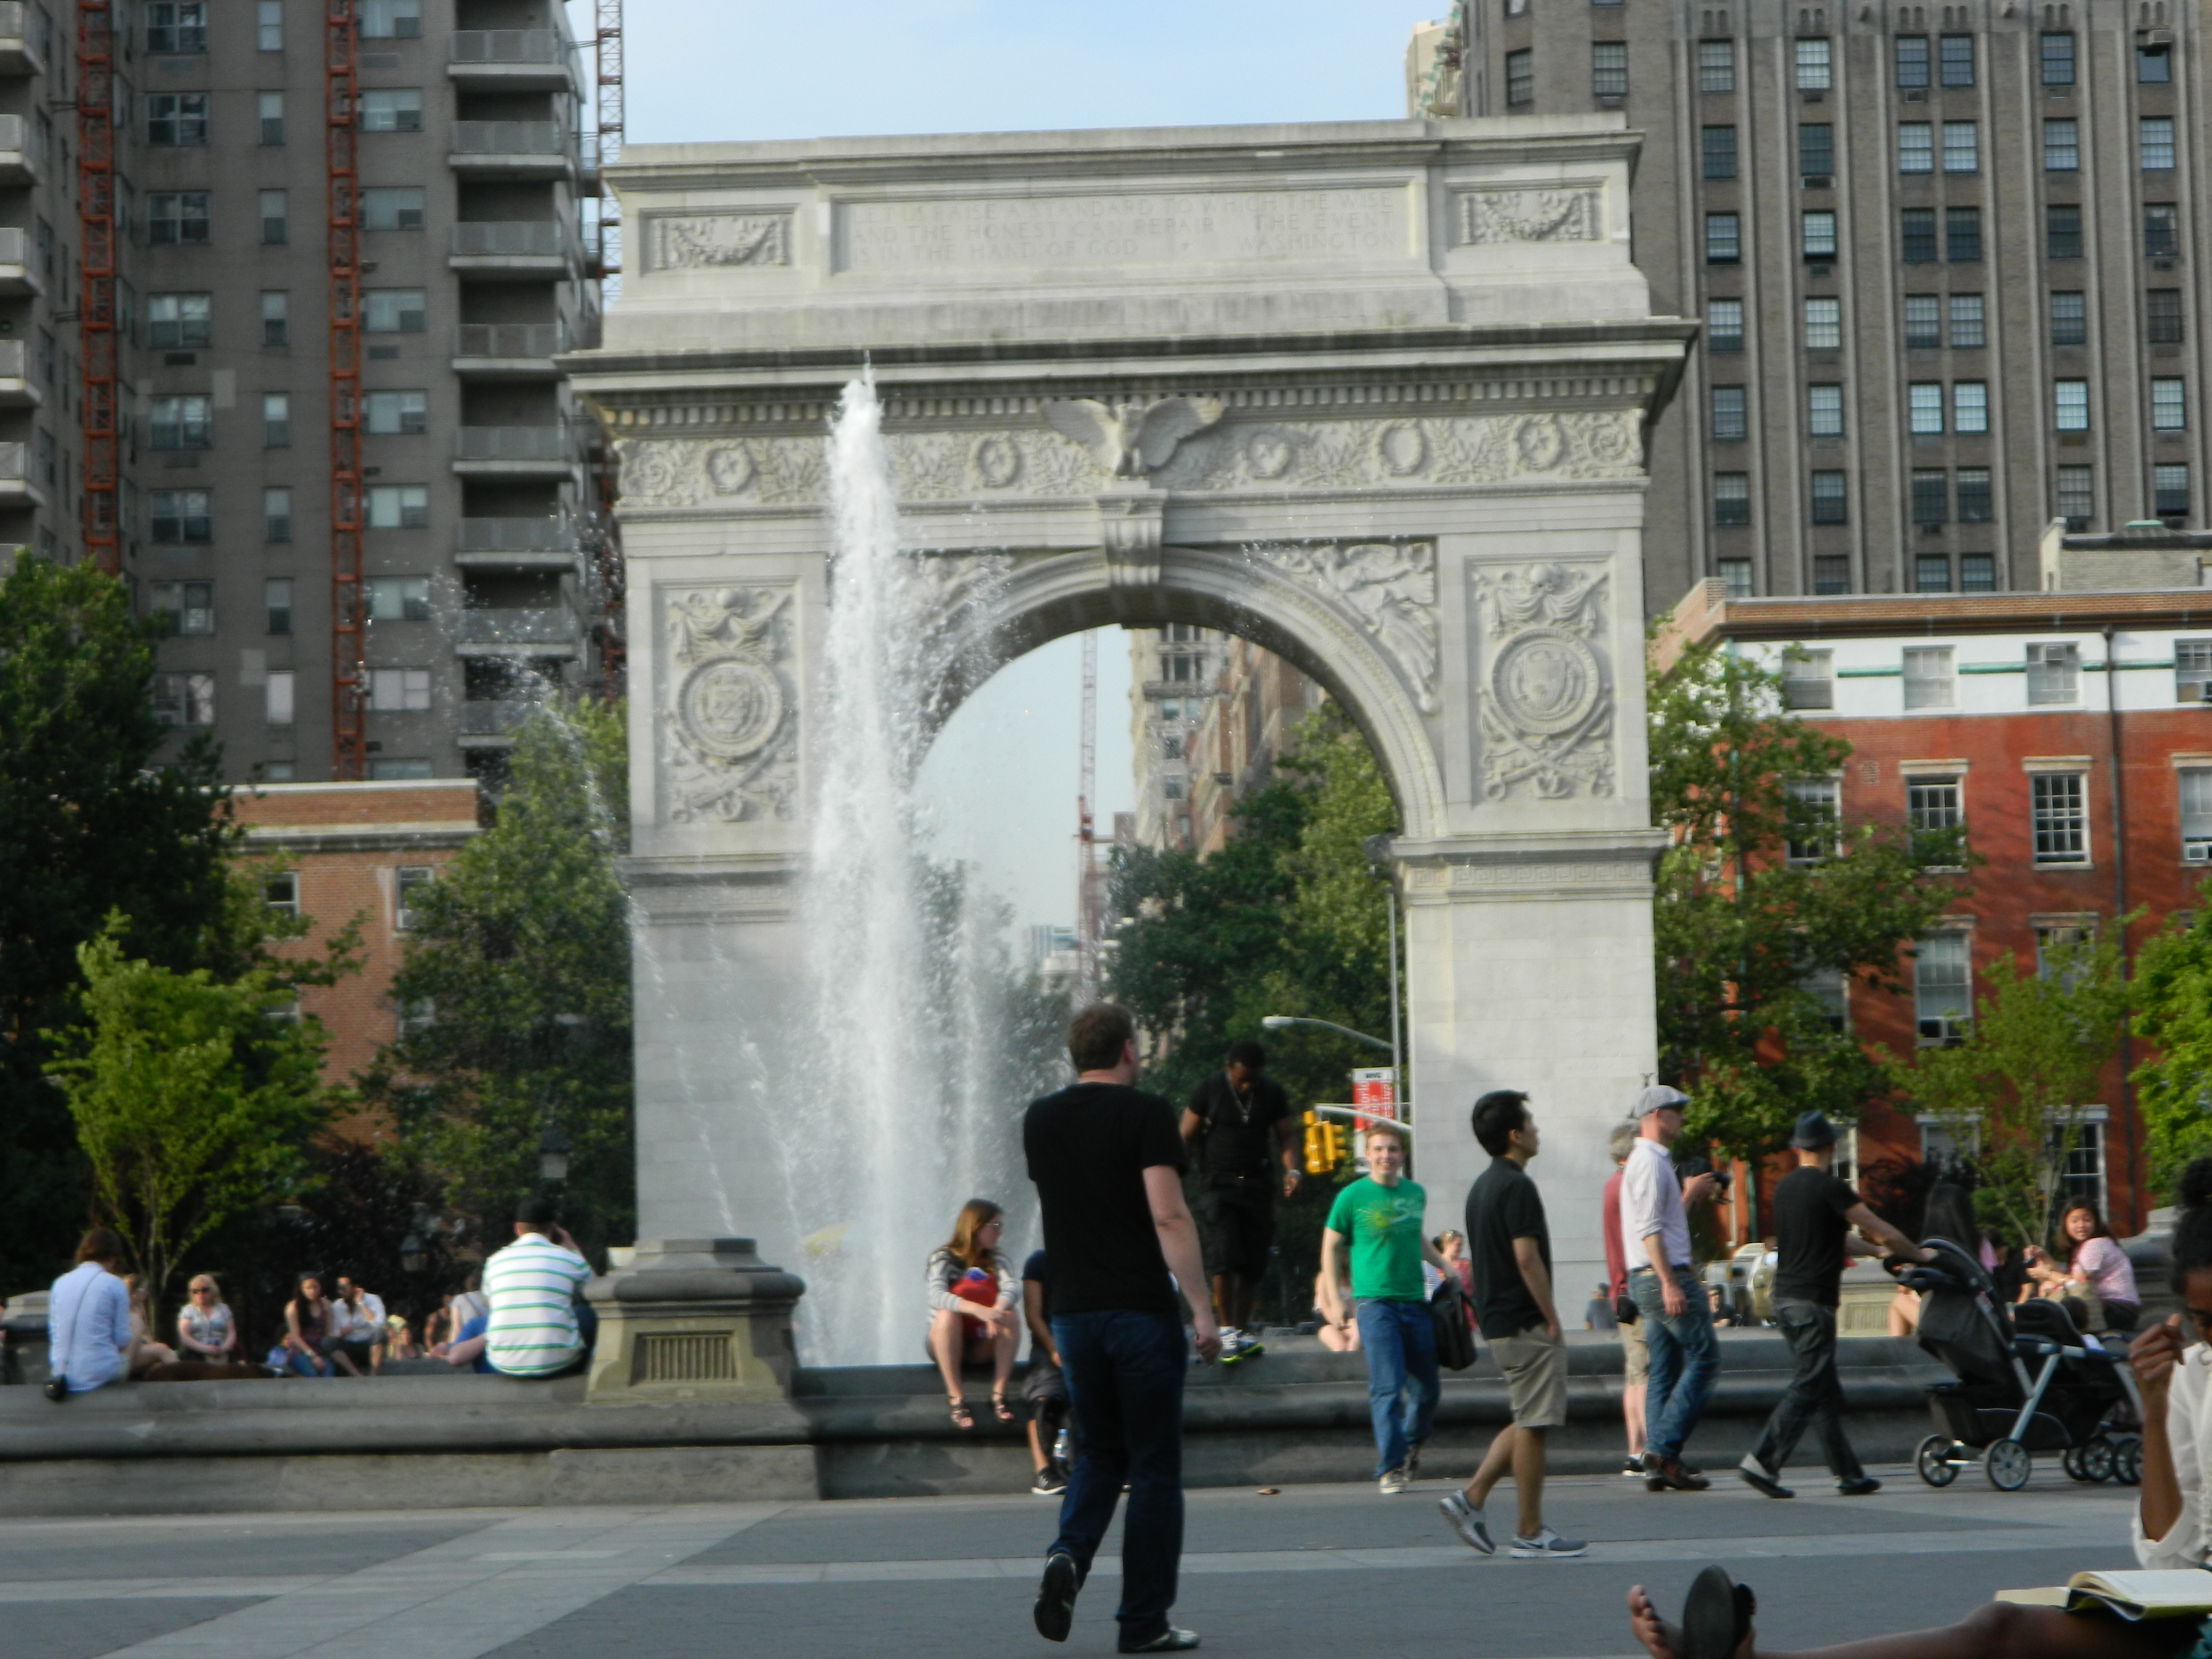 Washington Square Park en el Greenwich Village de Nueva York - Foto Nueva York Digital